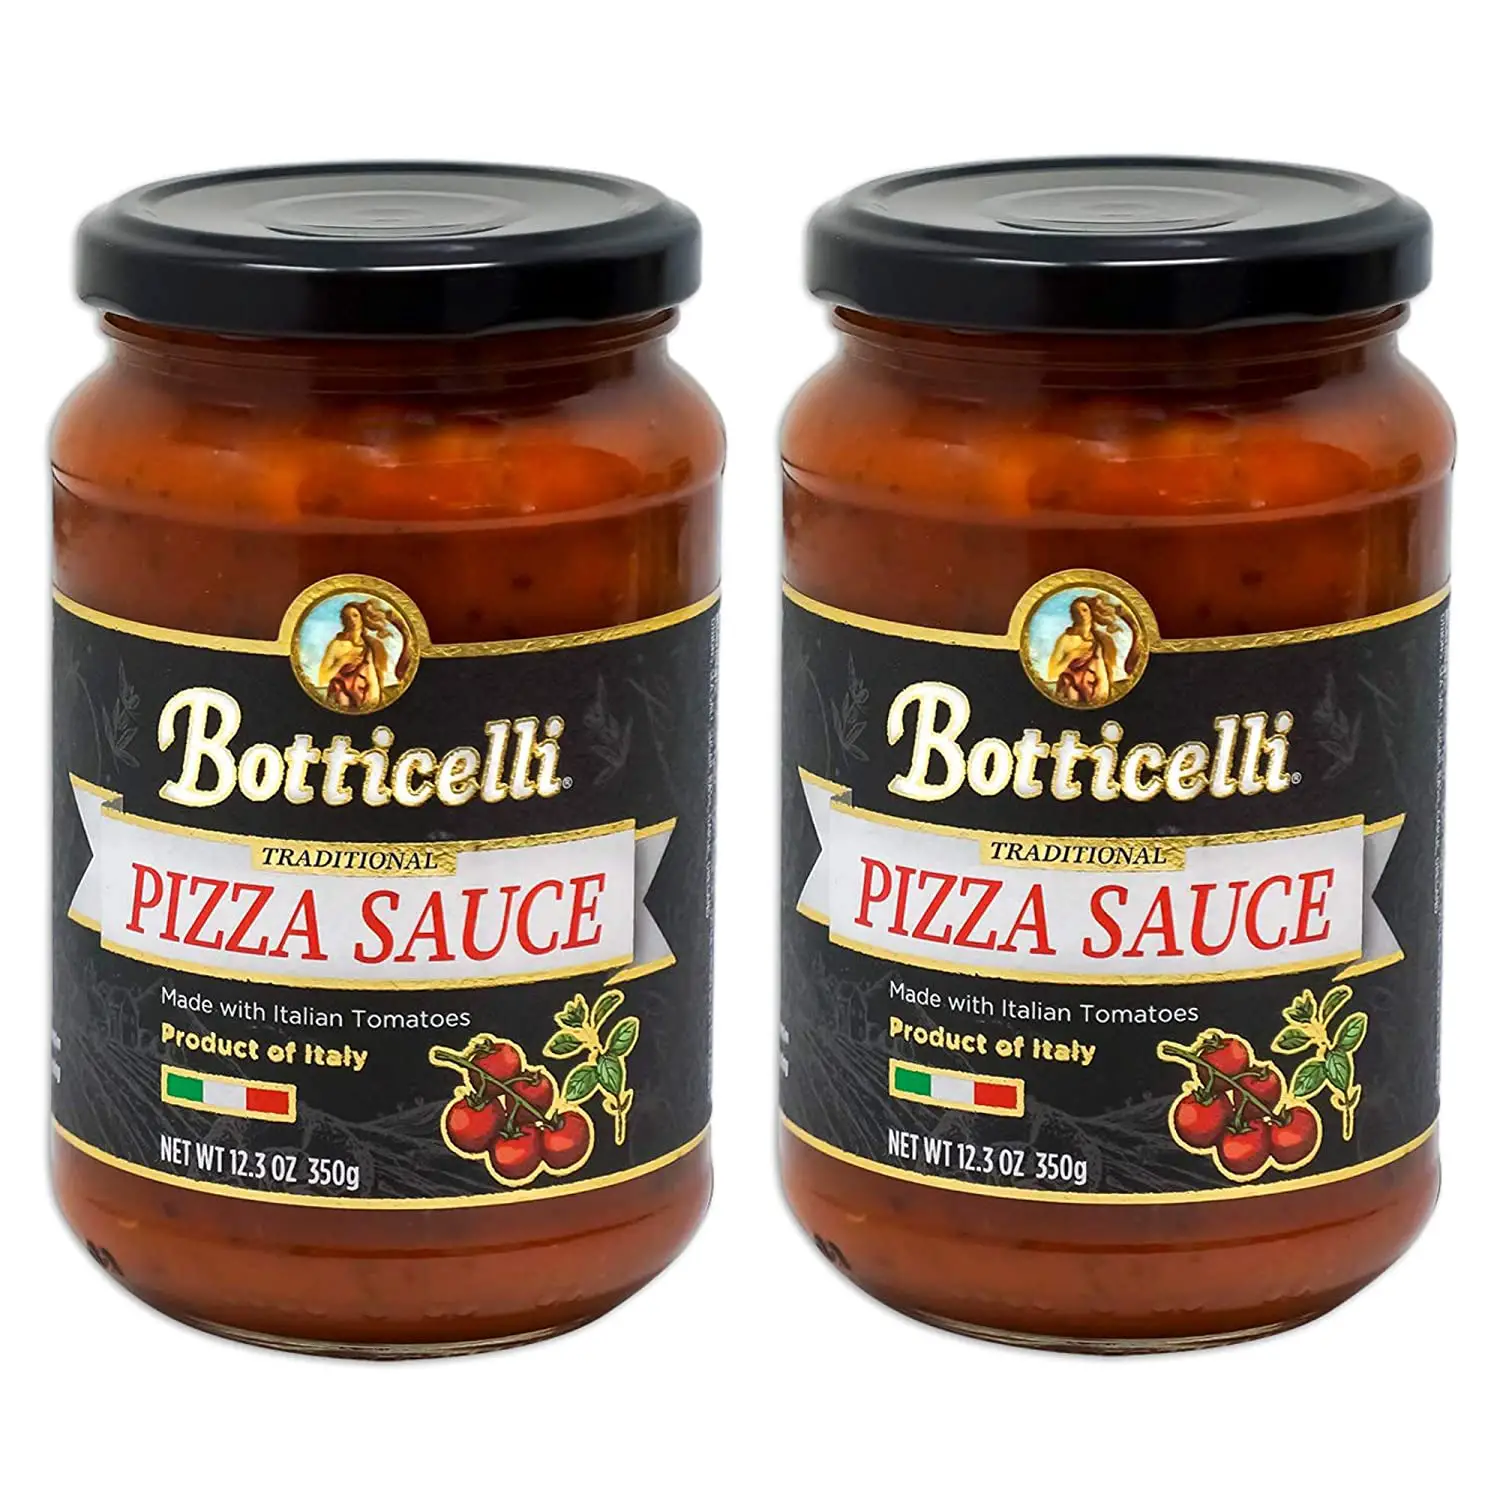 Botticelli Premium Italian Pizza Sauce for Authentic Italian Taste ...